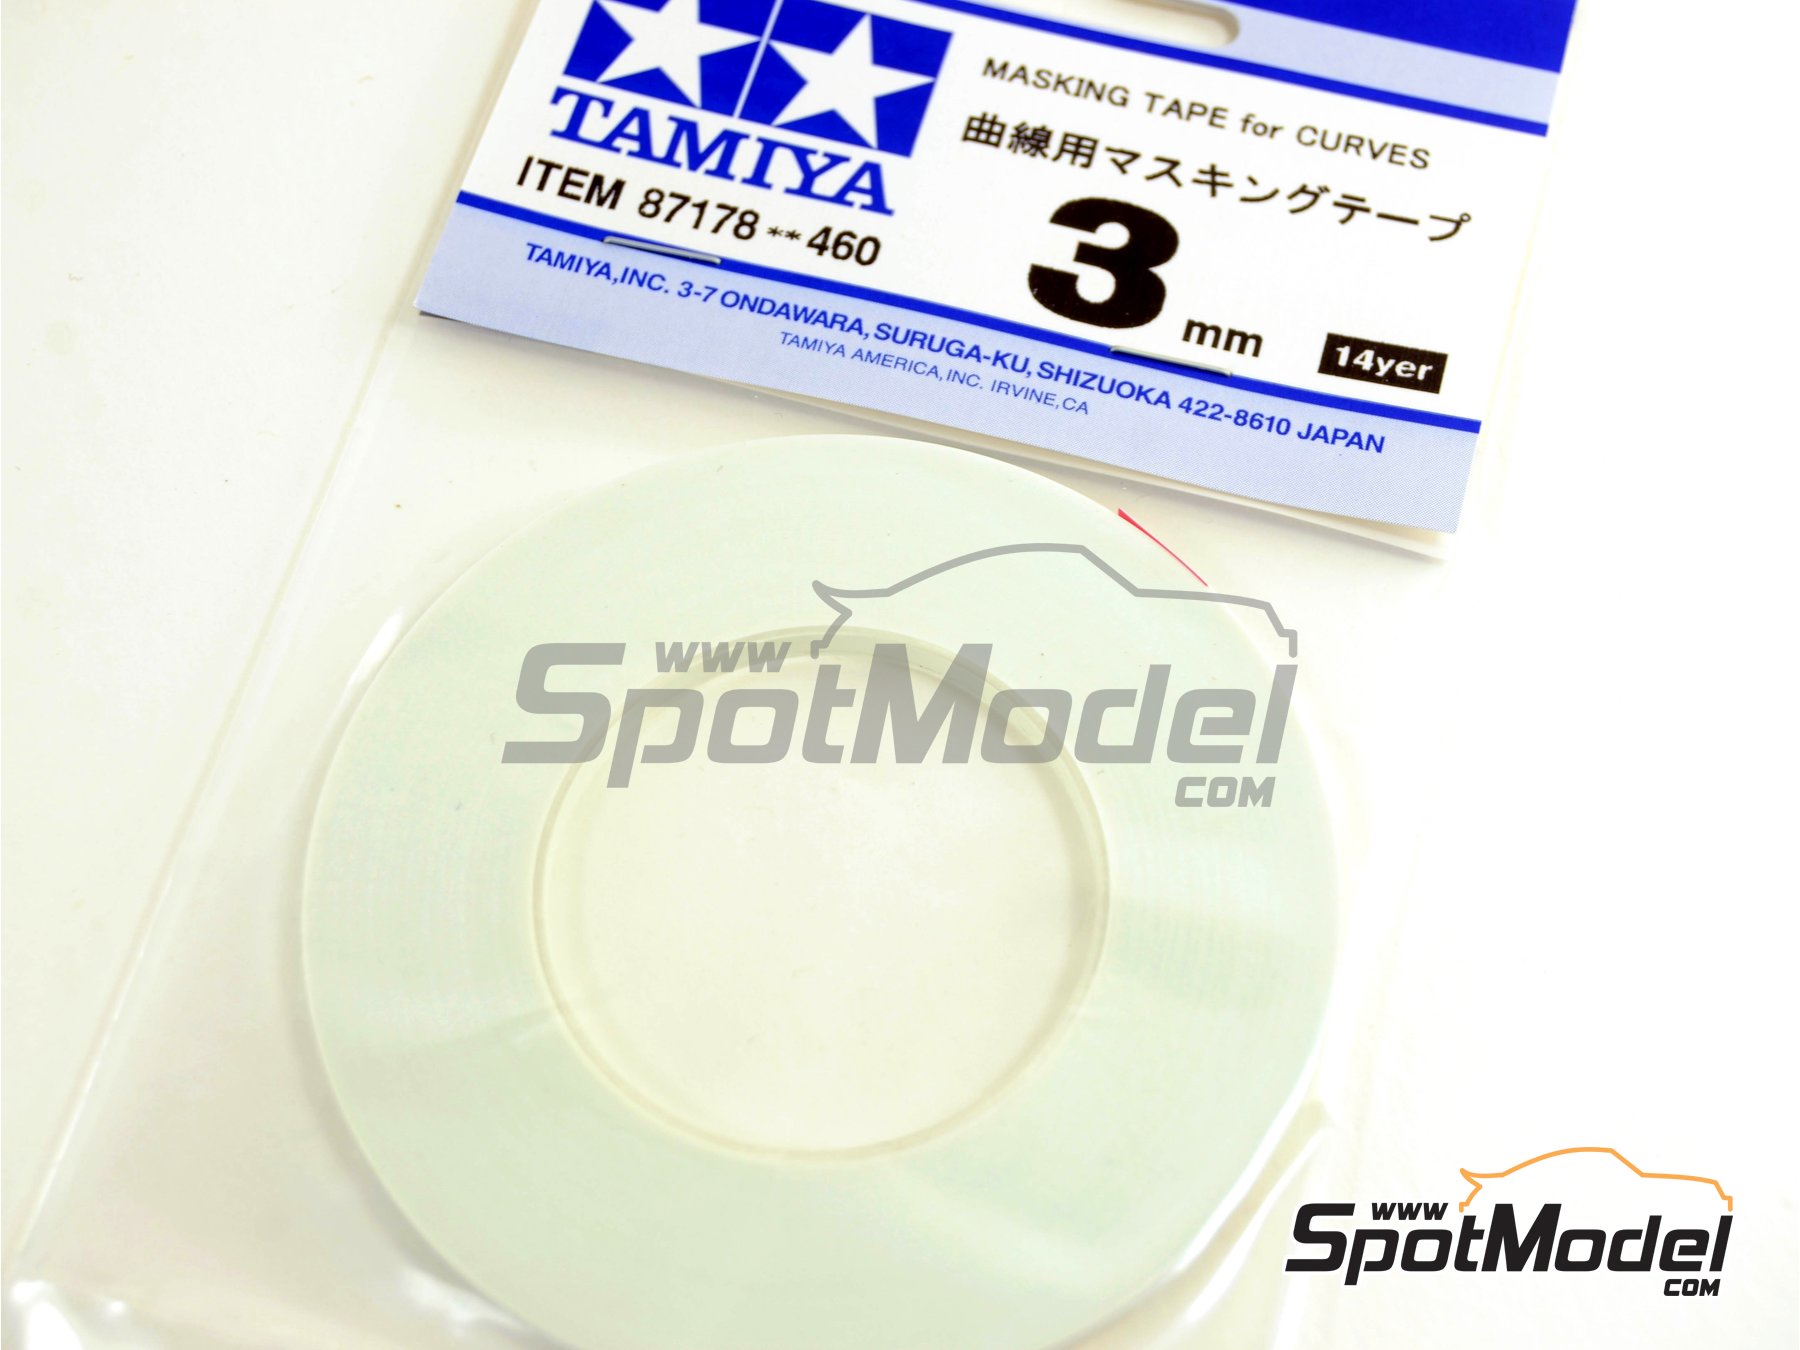 Tamiya TAM87178 87178 Masking Tape for Curves 3Mm 